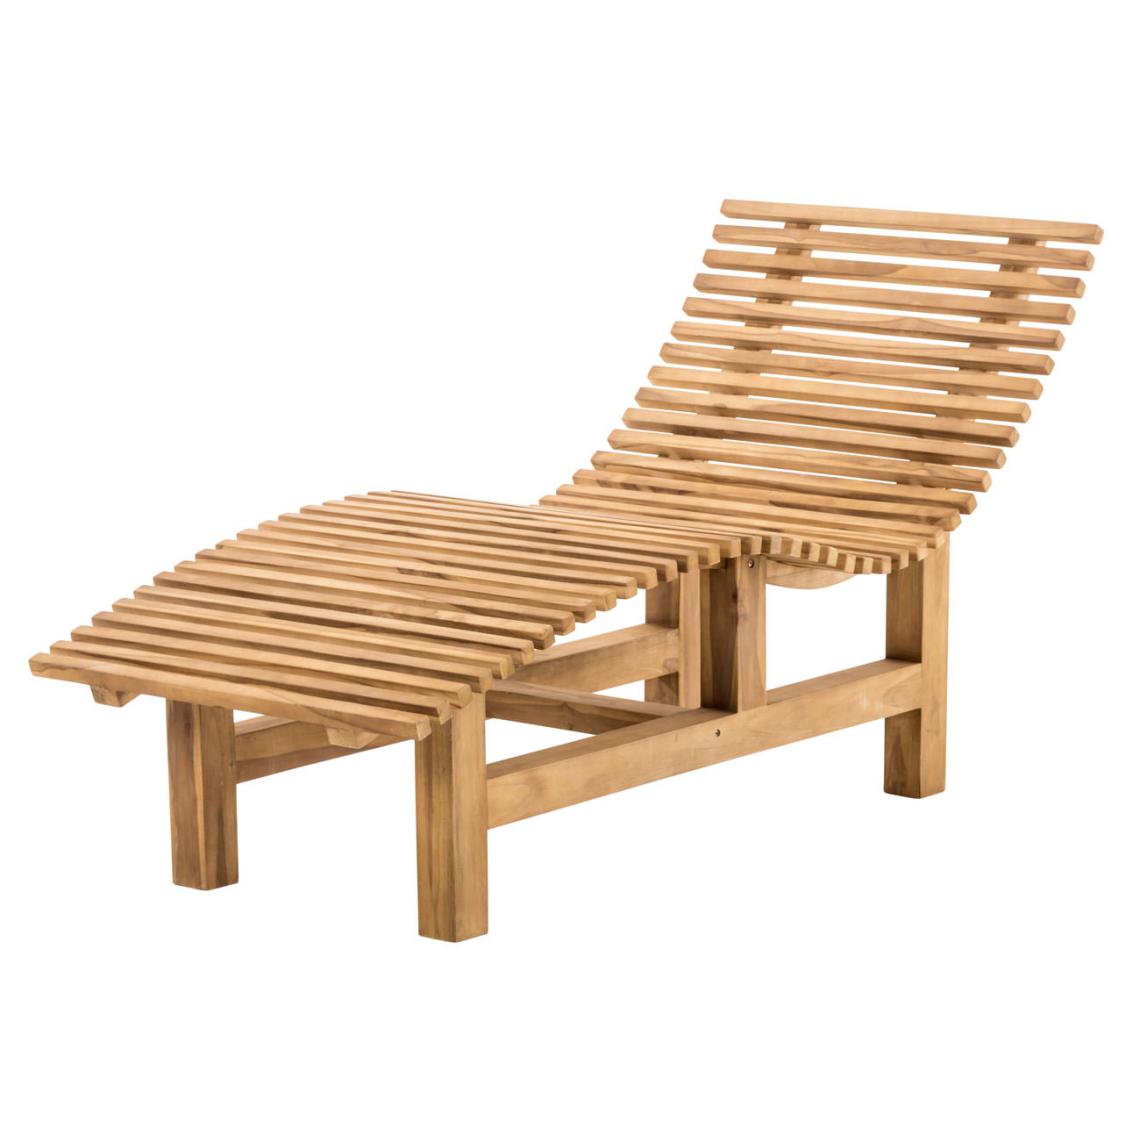 Icaverne - Magnifique Banc forestier gamme Manama 80x120x200 carré couleur teck - Ensembles tables et chaises